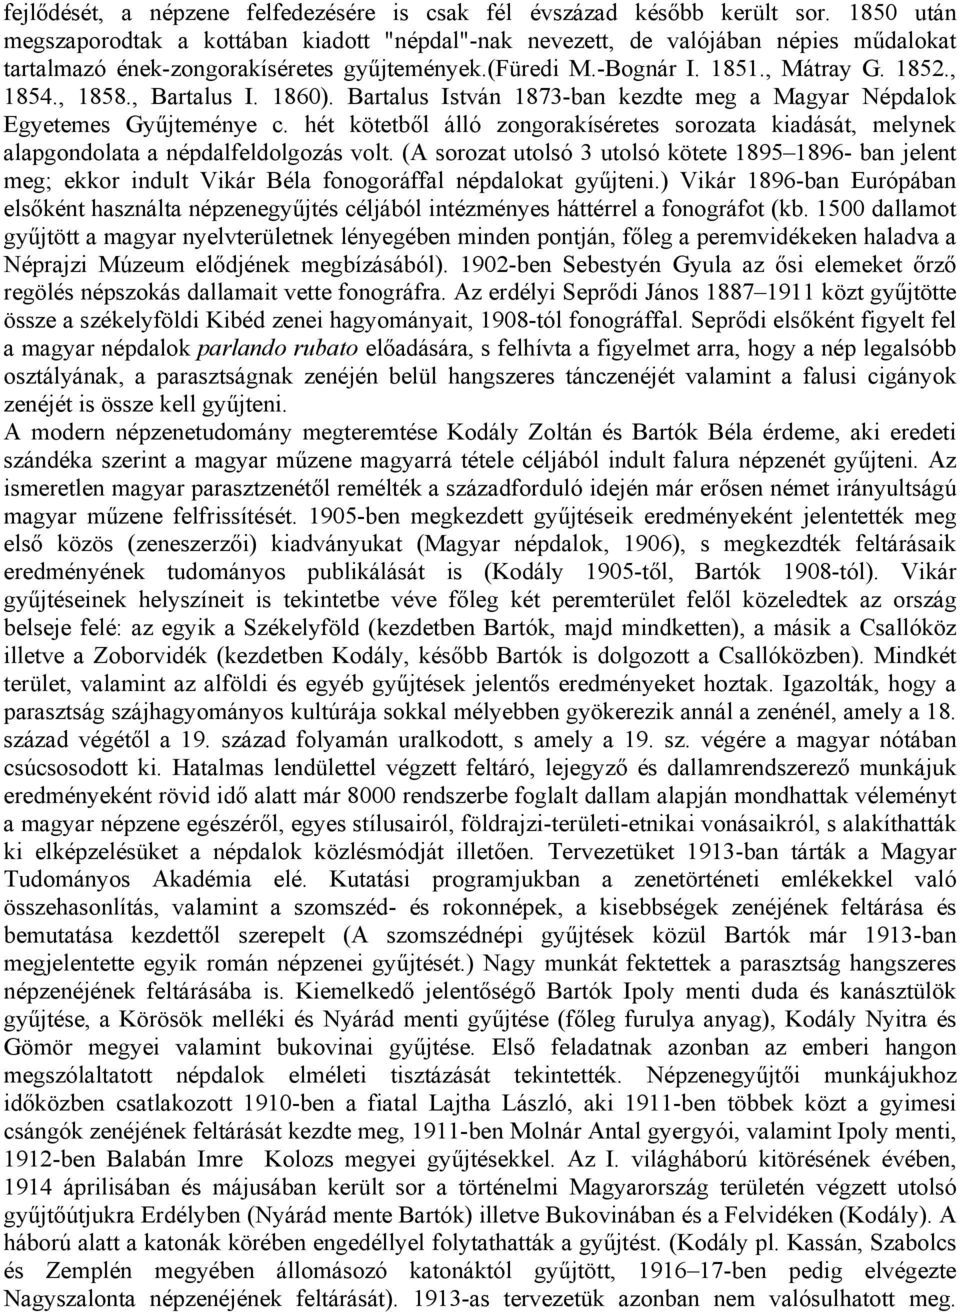 , Bartalus I. 1860). Bartalus István 1873-ban kezdte meg a Magyar Népdalok Egyetemes Gyűjteménye c.